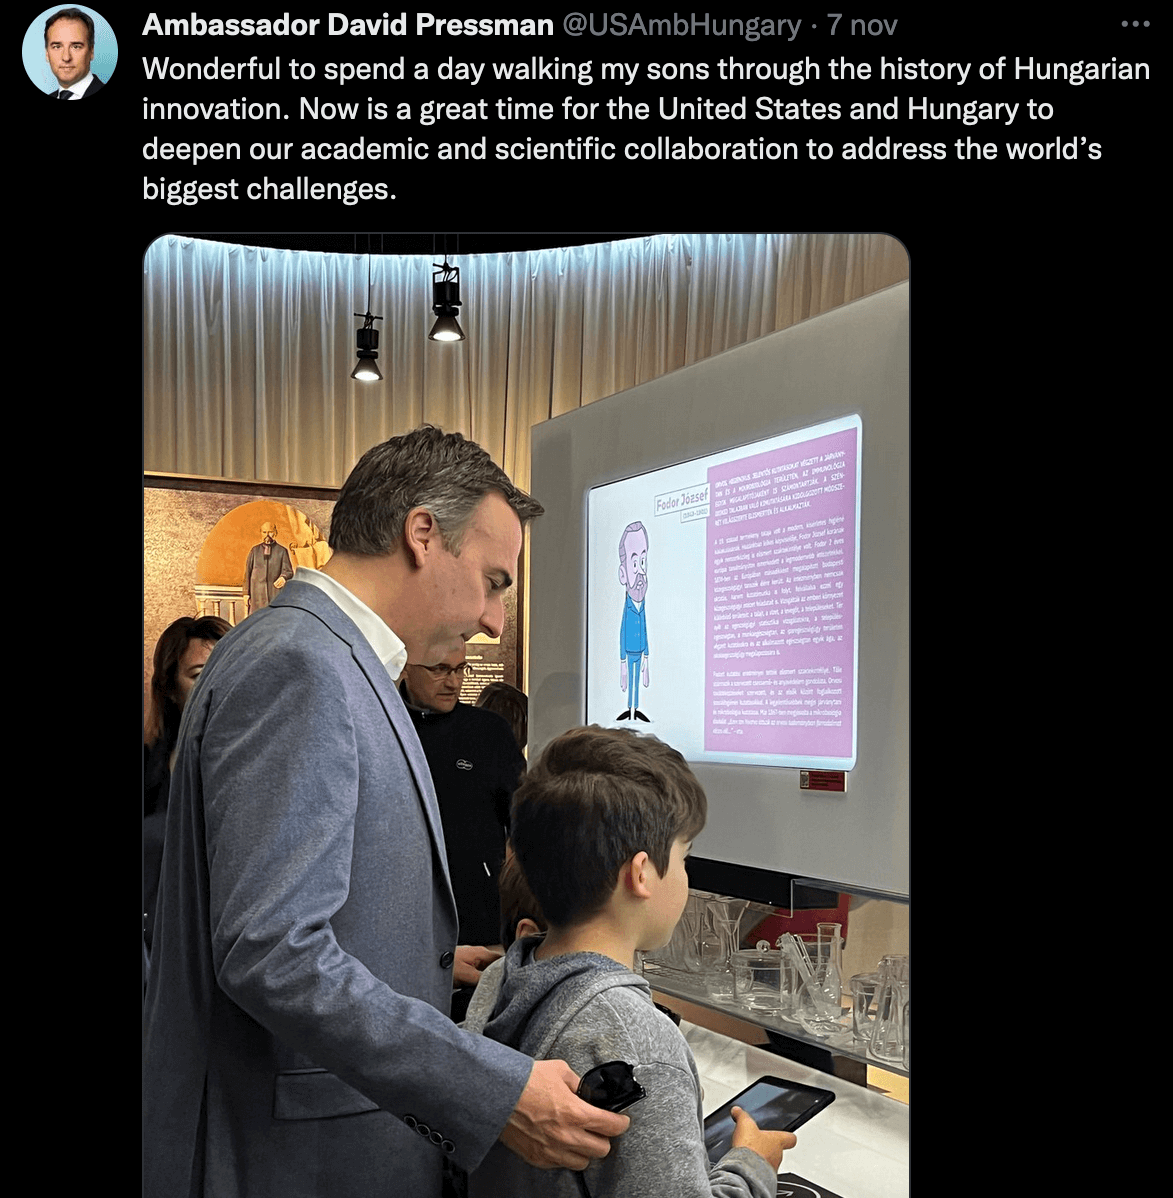 Ungheria, l'ambasciatore USA David Pressman che replica all'omotransfobia di Orban con marito e figli - Ungheria lambasciatore USA David Pressman 2 - Gay.it